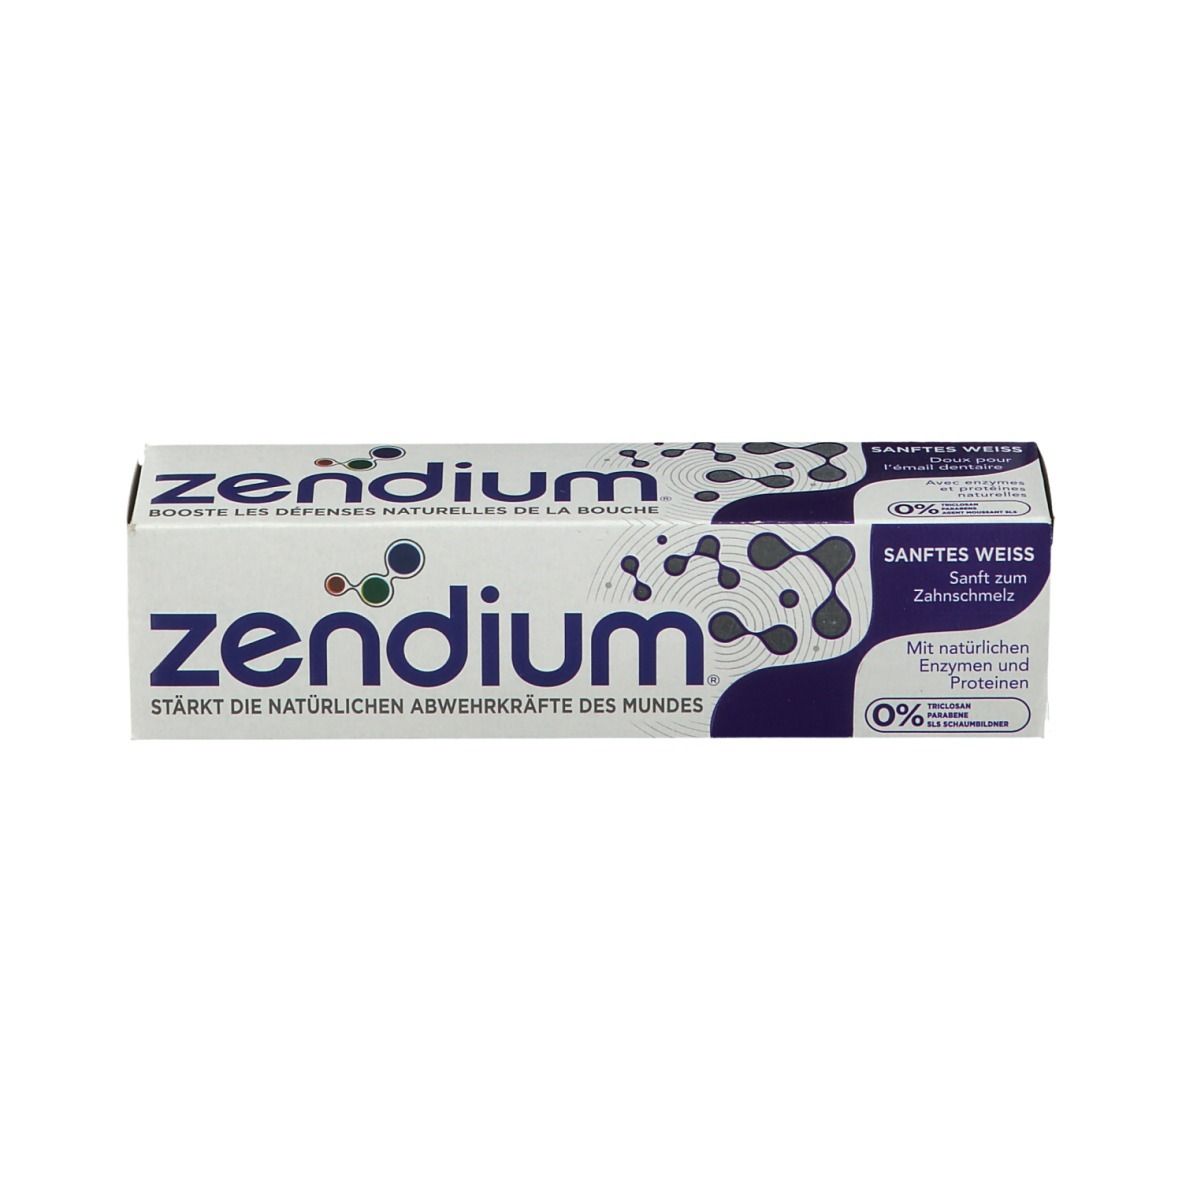 zendium® Sanftes weiss Zahnpasta